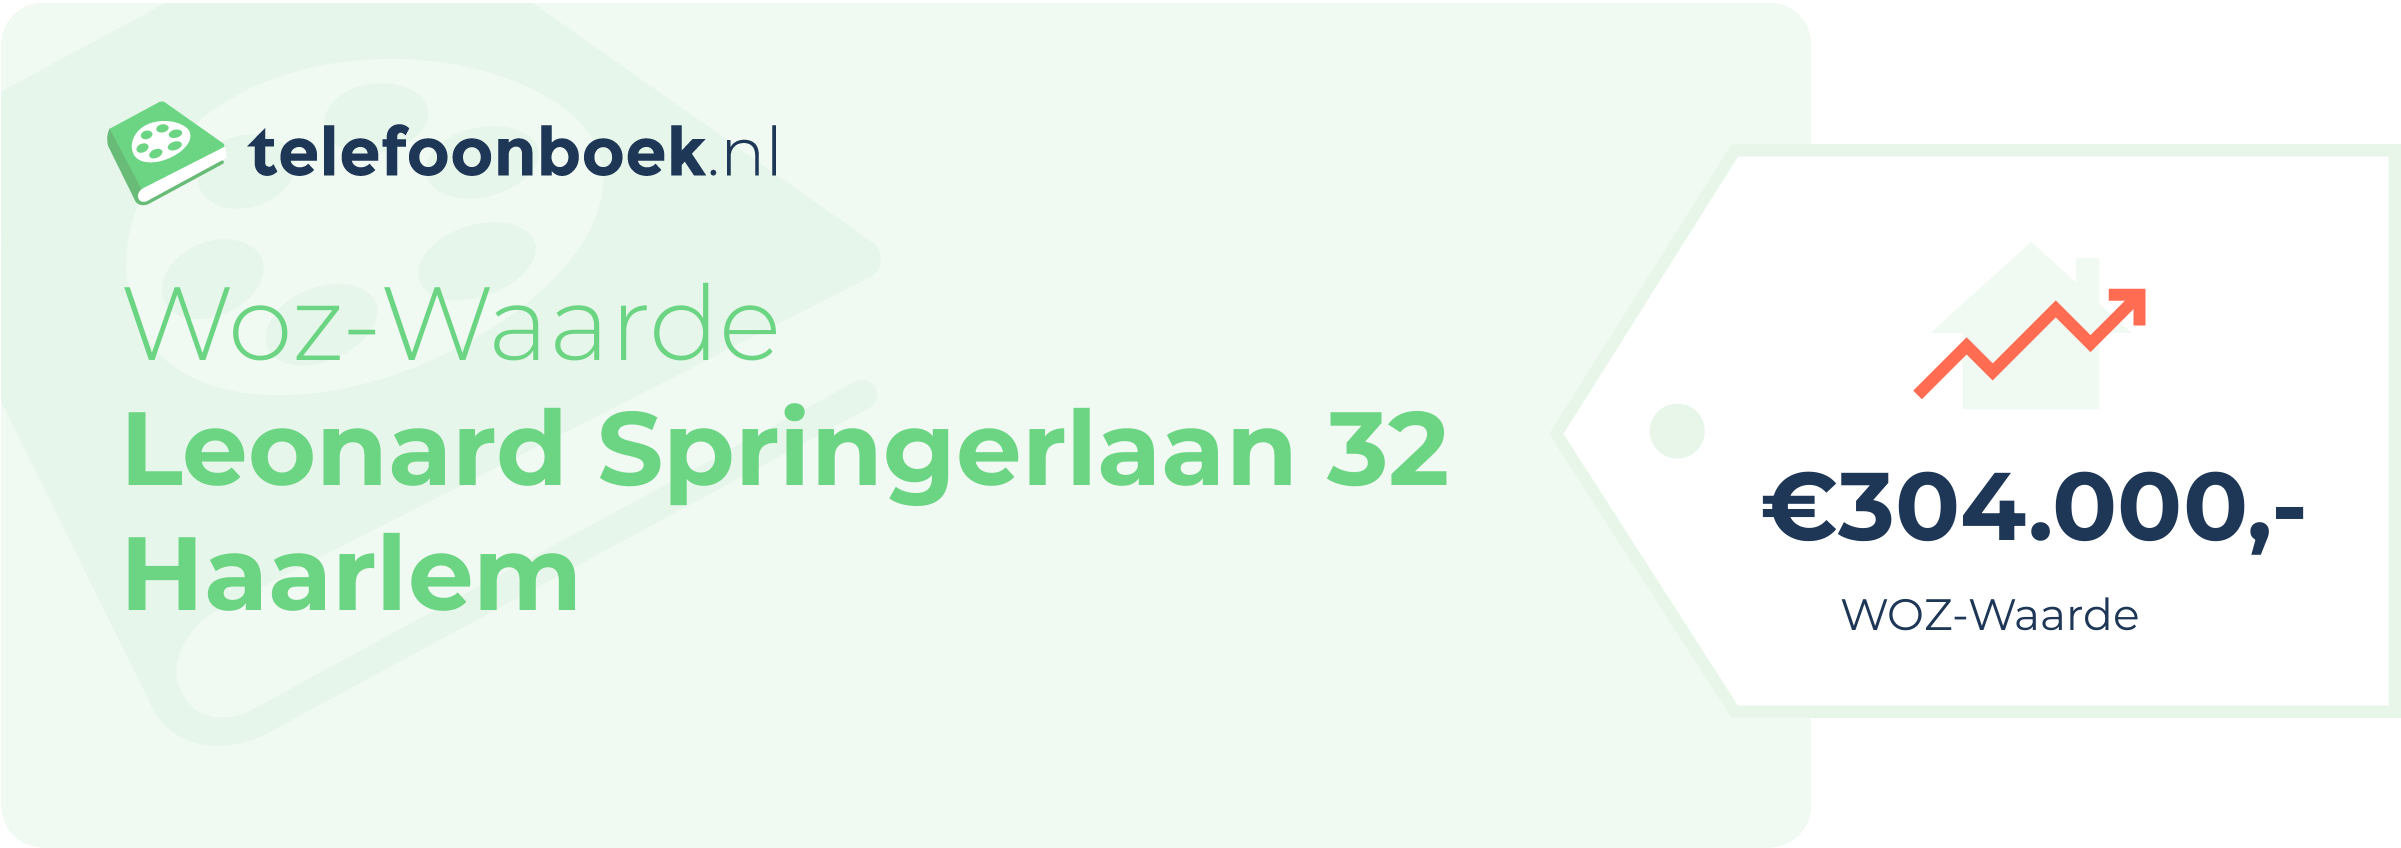 WOZ-waarde Leonard Springerlaan 32 Haarlem